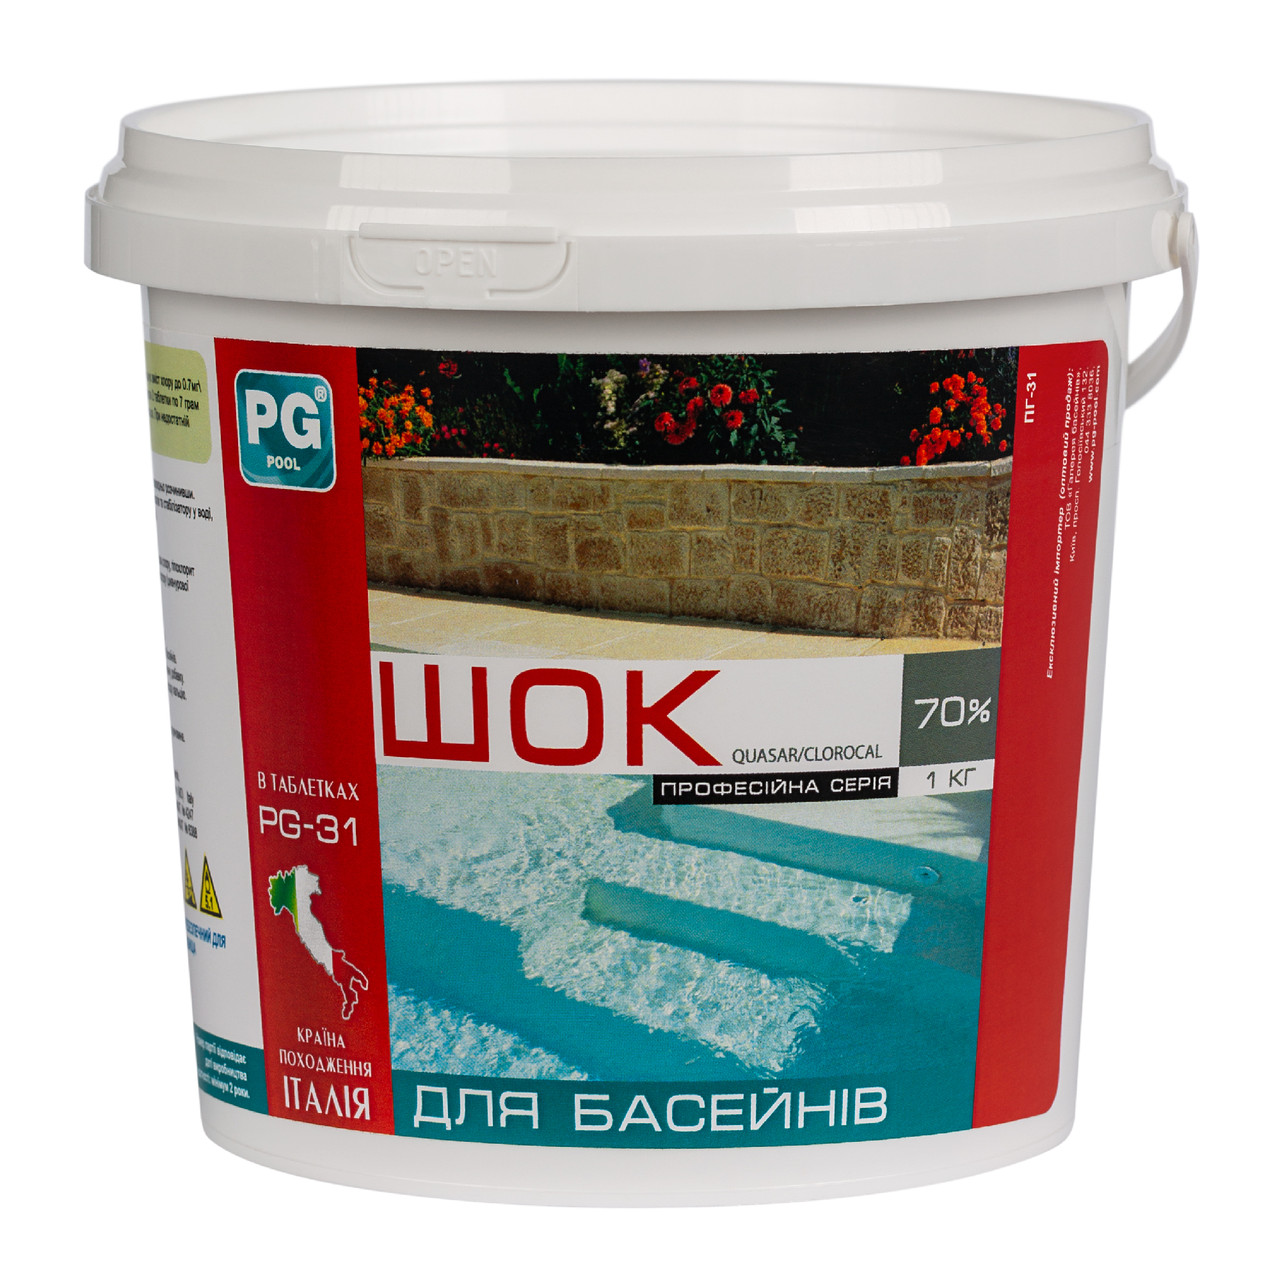 Barchemicals PG-31 Clorocal шок-хлор у таблетках (гіпохлорит кальцію), 1 кг